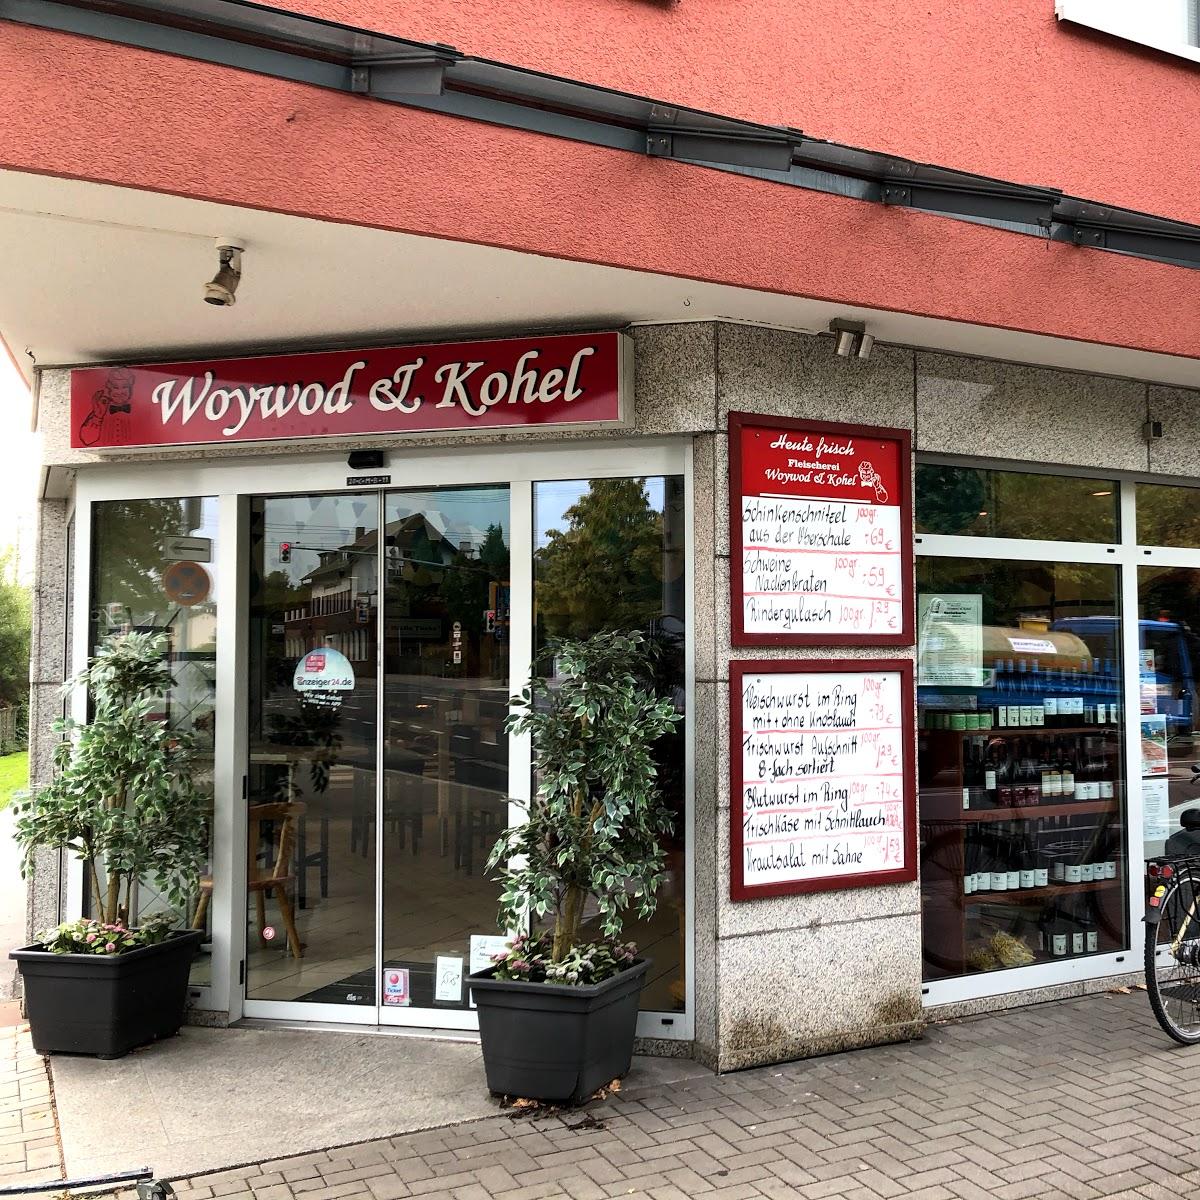 Restaurant "Woywod und Kohel GbR - Fleischerei und Partyservice" in Hilden